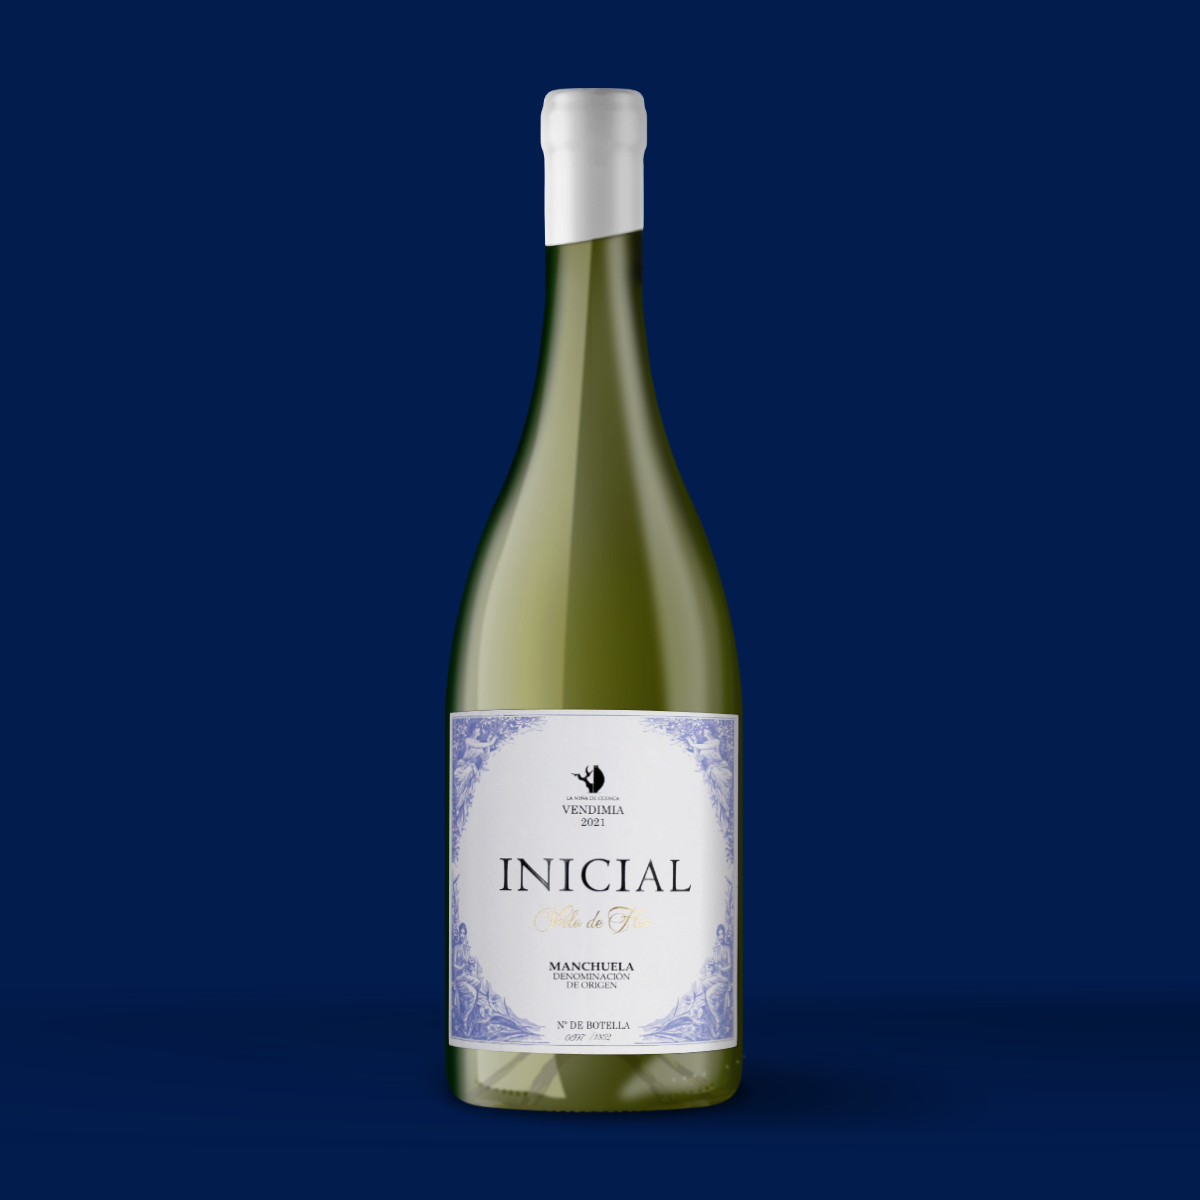 Diseño de etiqueta de vino Inicial- Denominación de Origen Manchuela